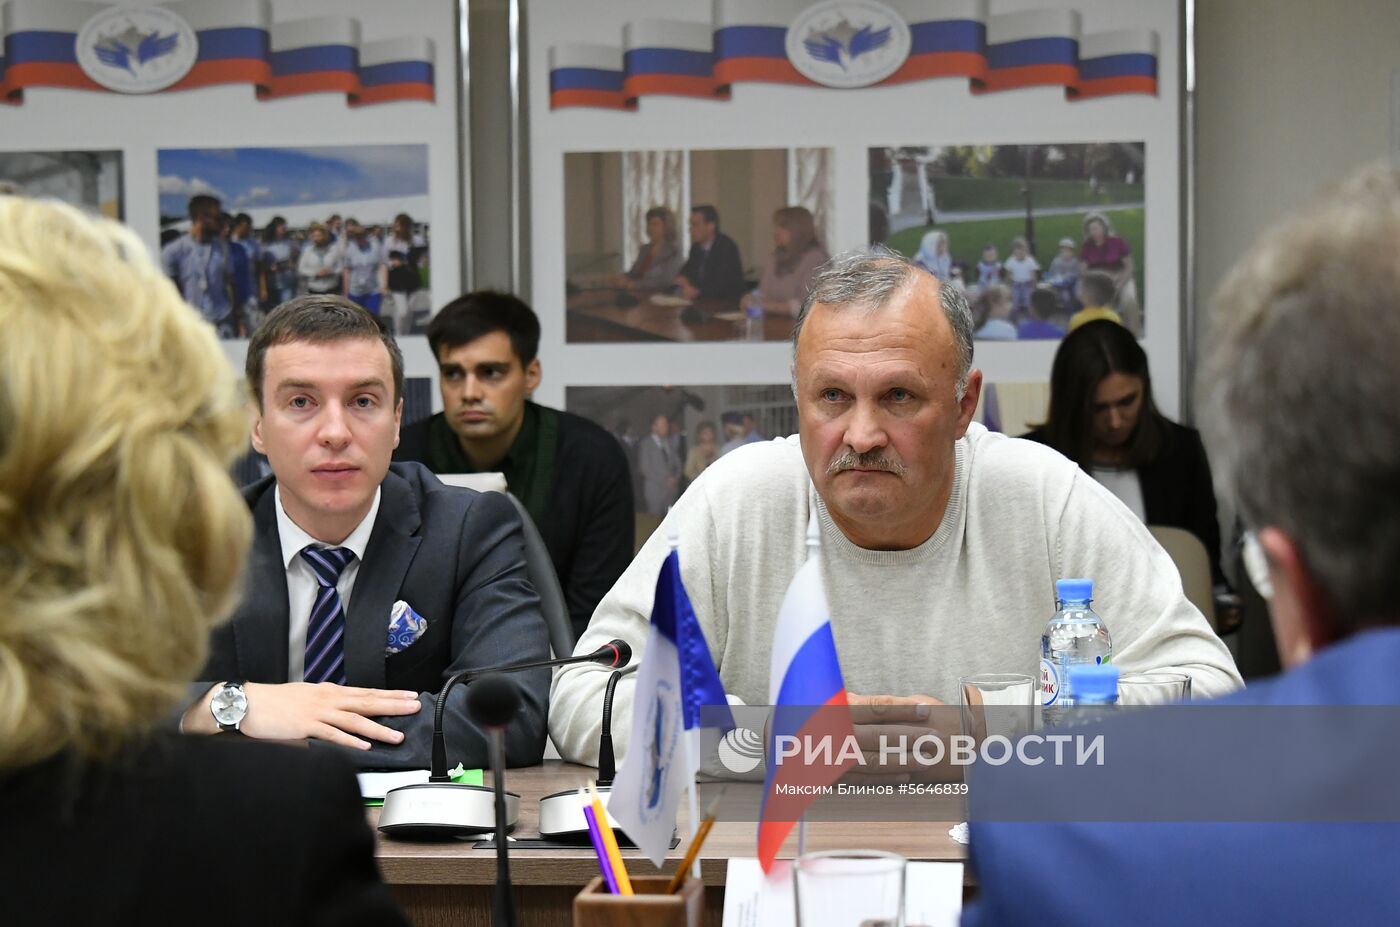 Уполномоченный по правам человека в РФ Т. Москалькова встретилась с отцом М. Бутиной 